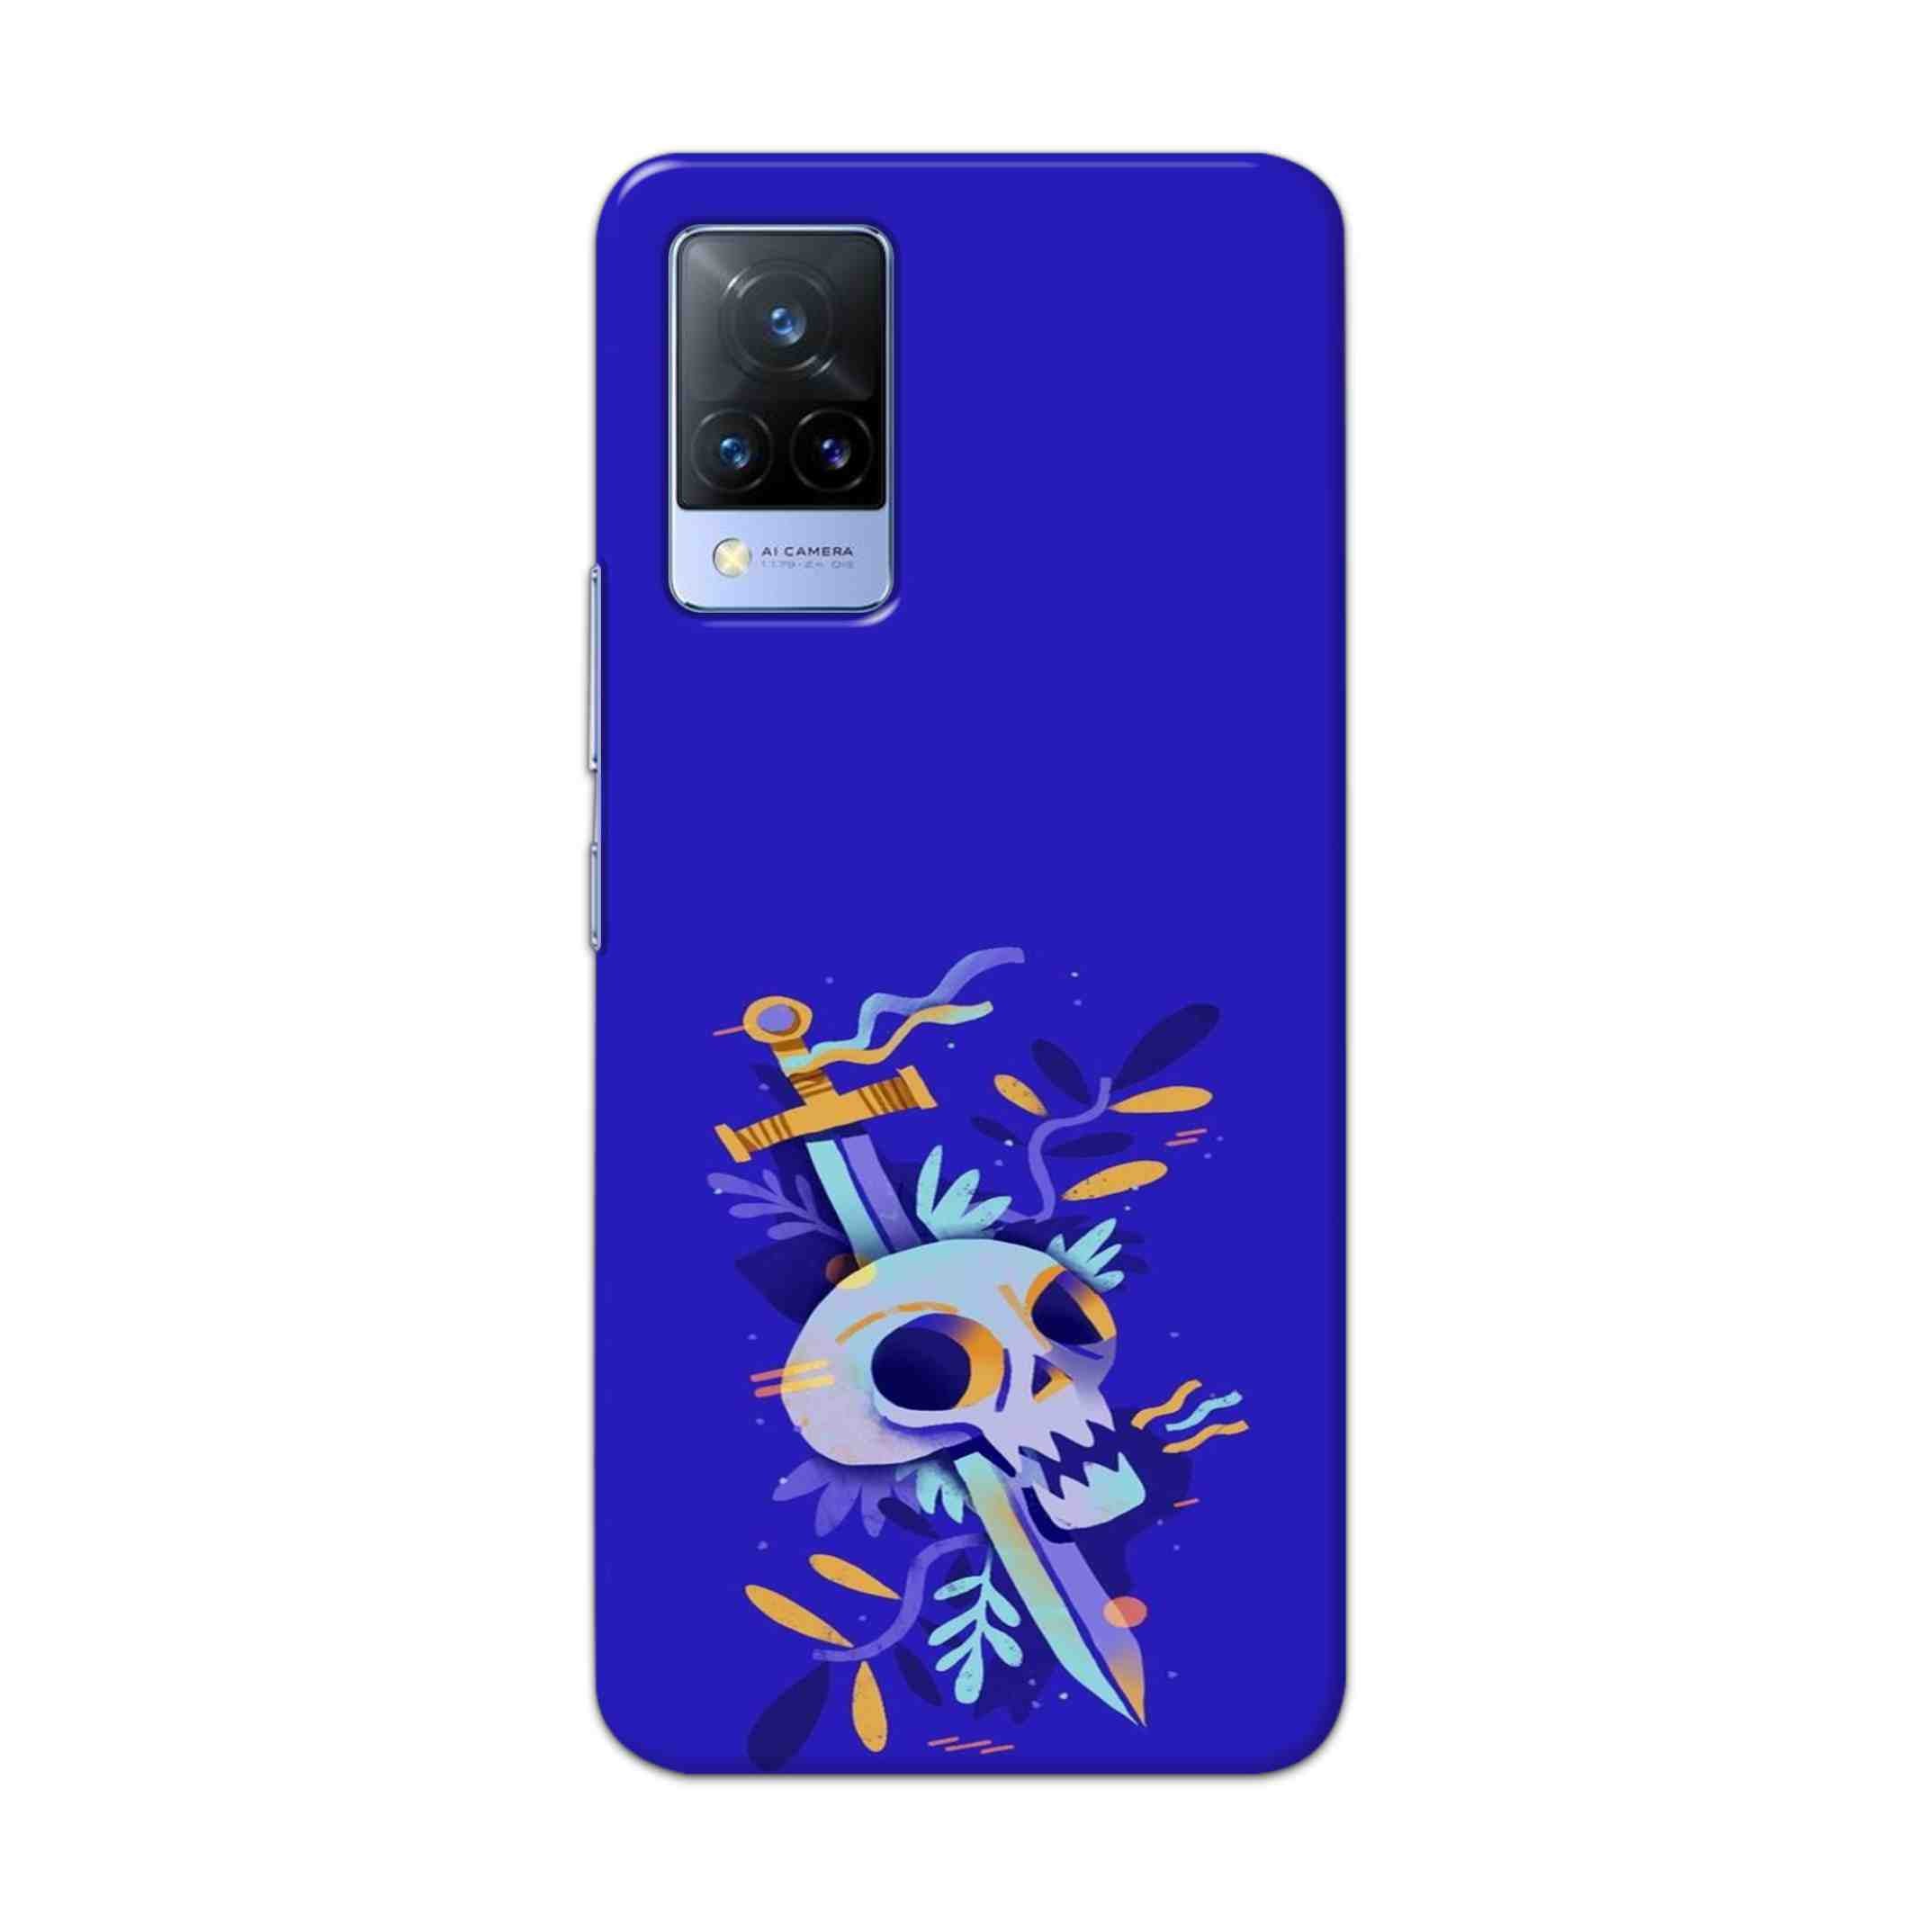 Buy Blue Skull Hard Back Mobile Phone Case Cover For Vivo V21 Online